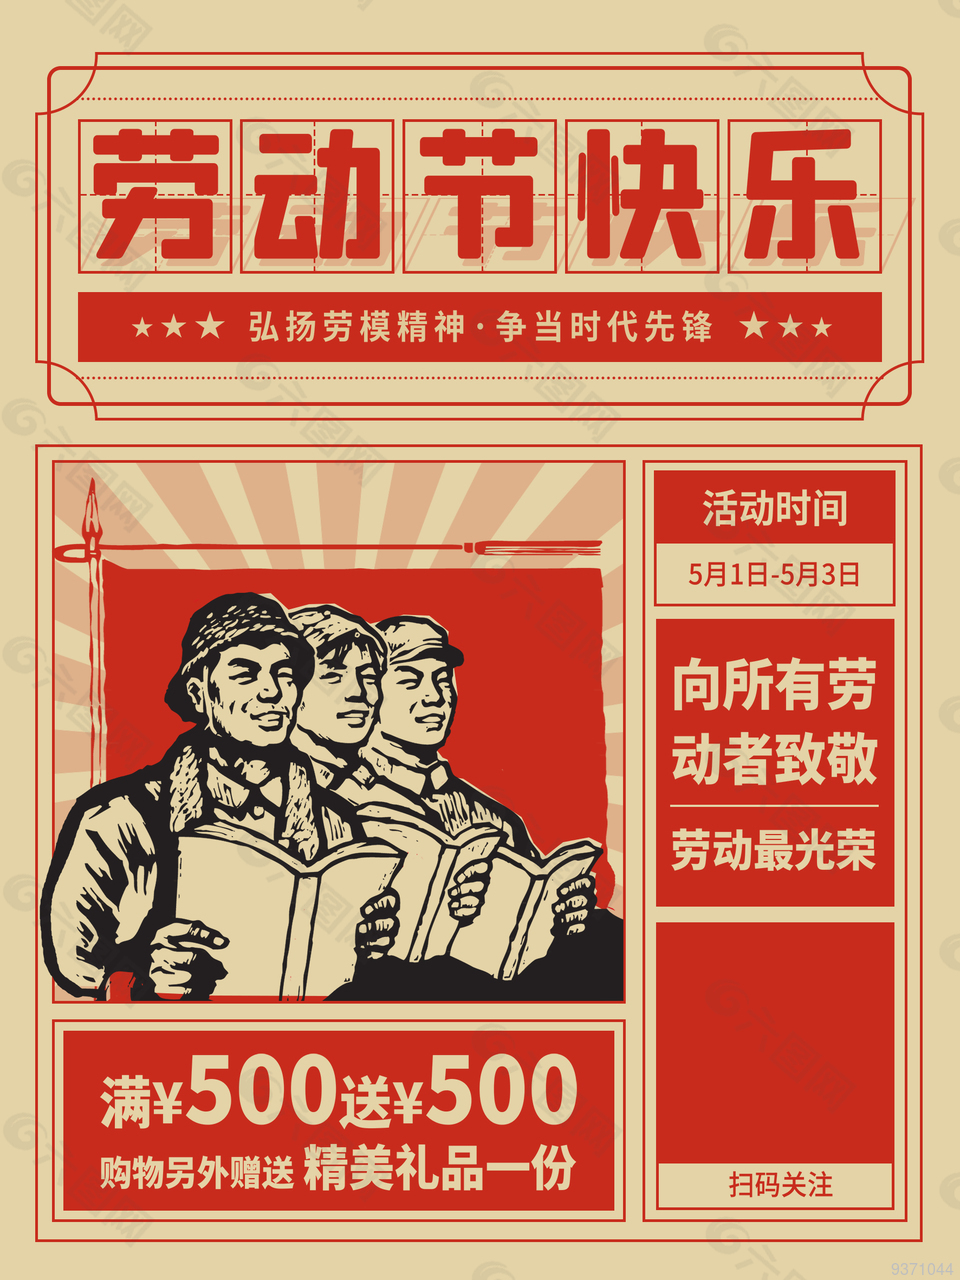 劳动节创意宣传海报